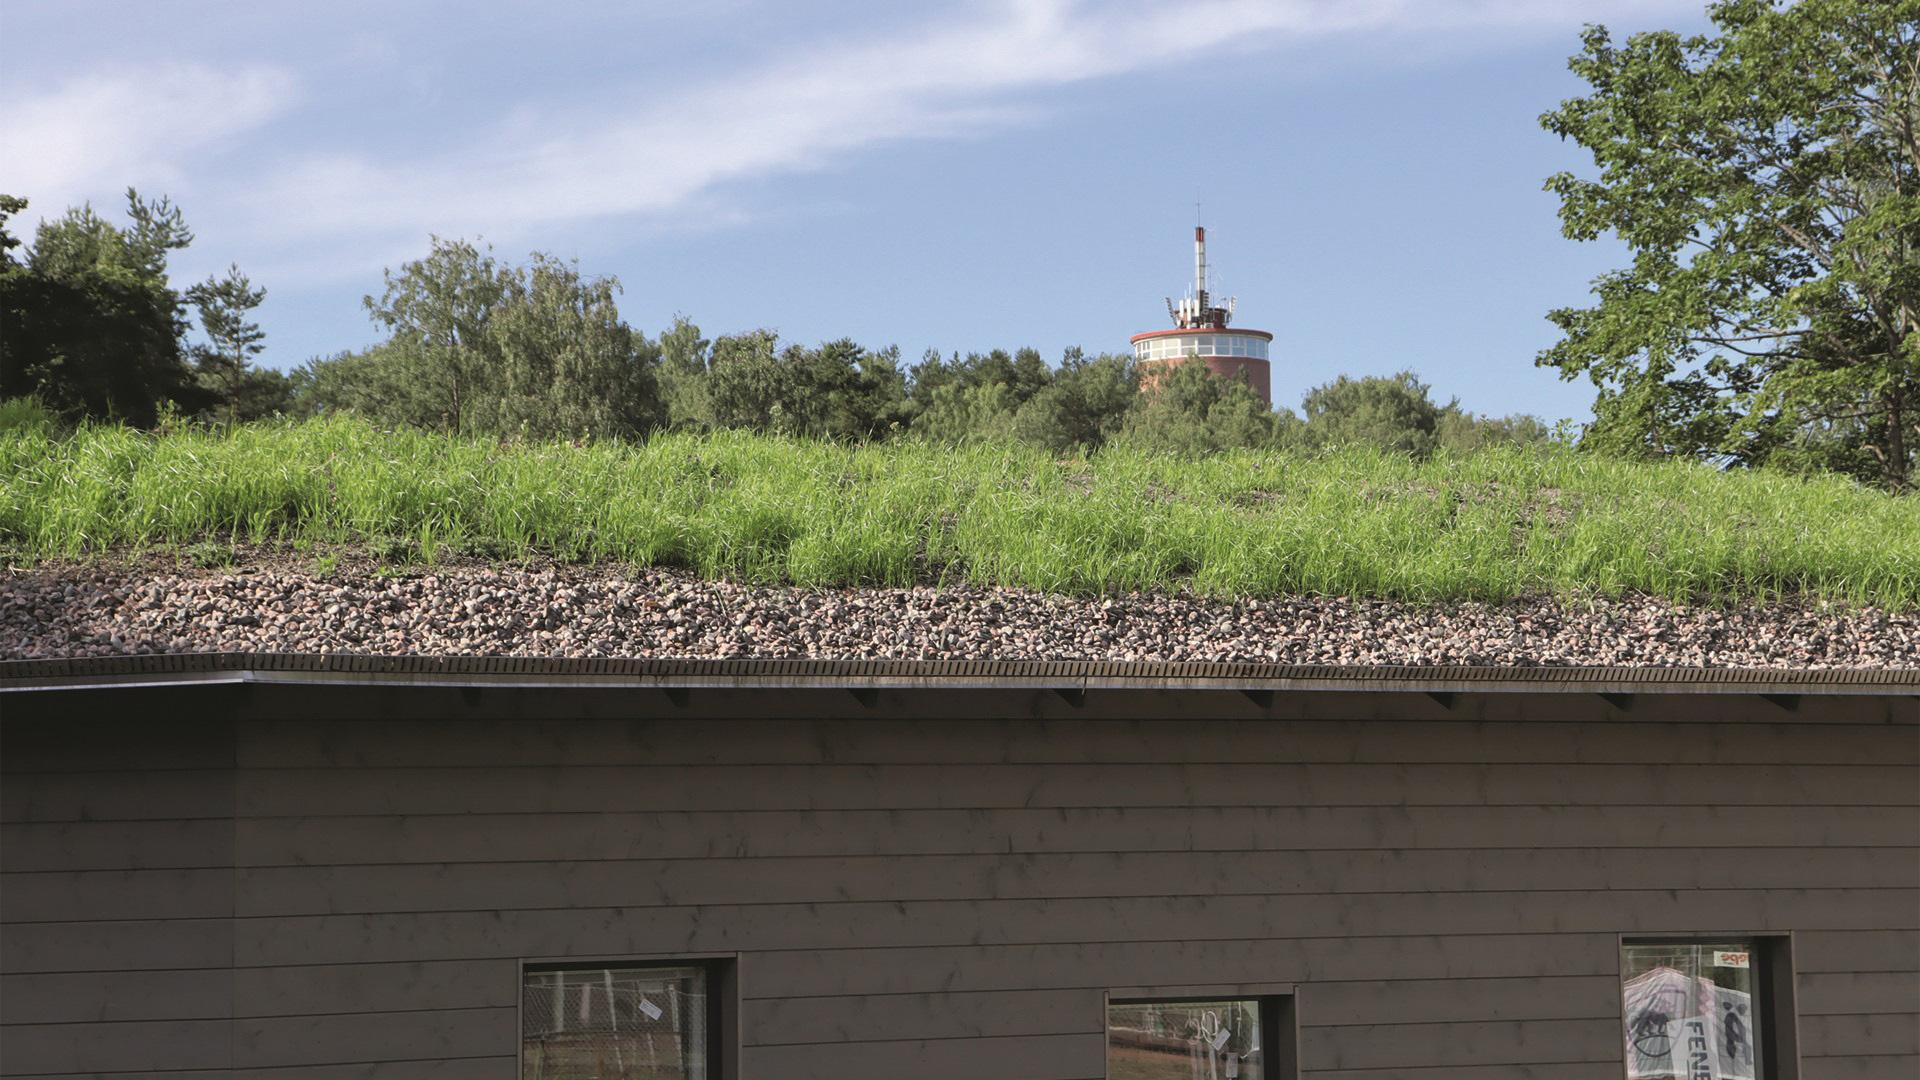 Heinolan kohteessa katon muotoilu on kaareva ja tämä täytyi huomioida niin suunnittelu- kuin toteutusvaiheessa.